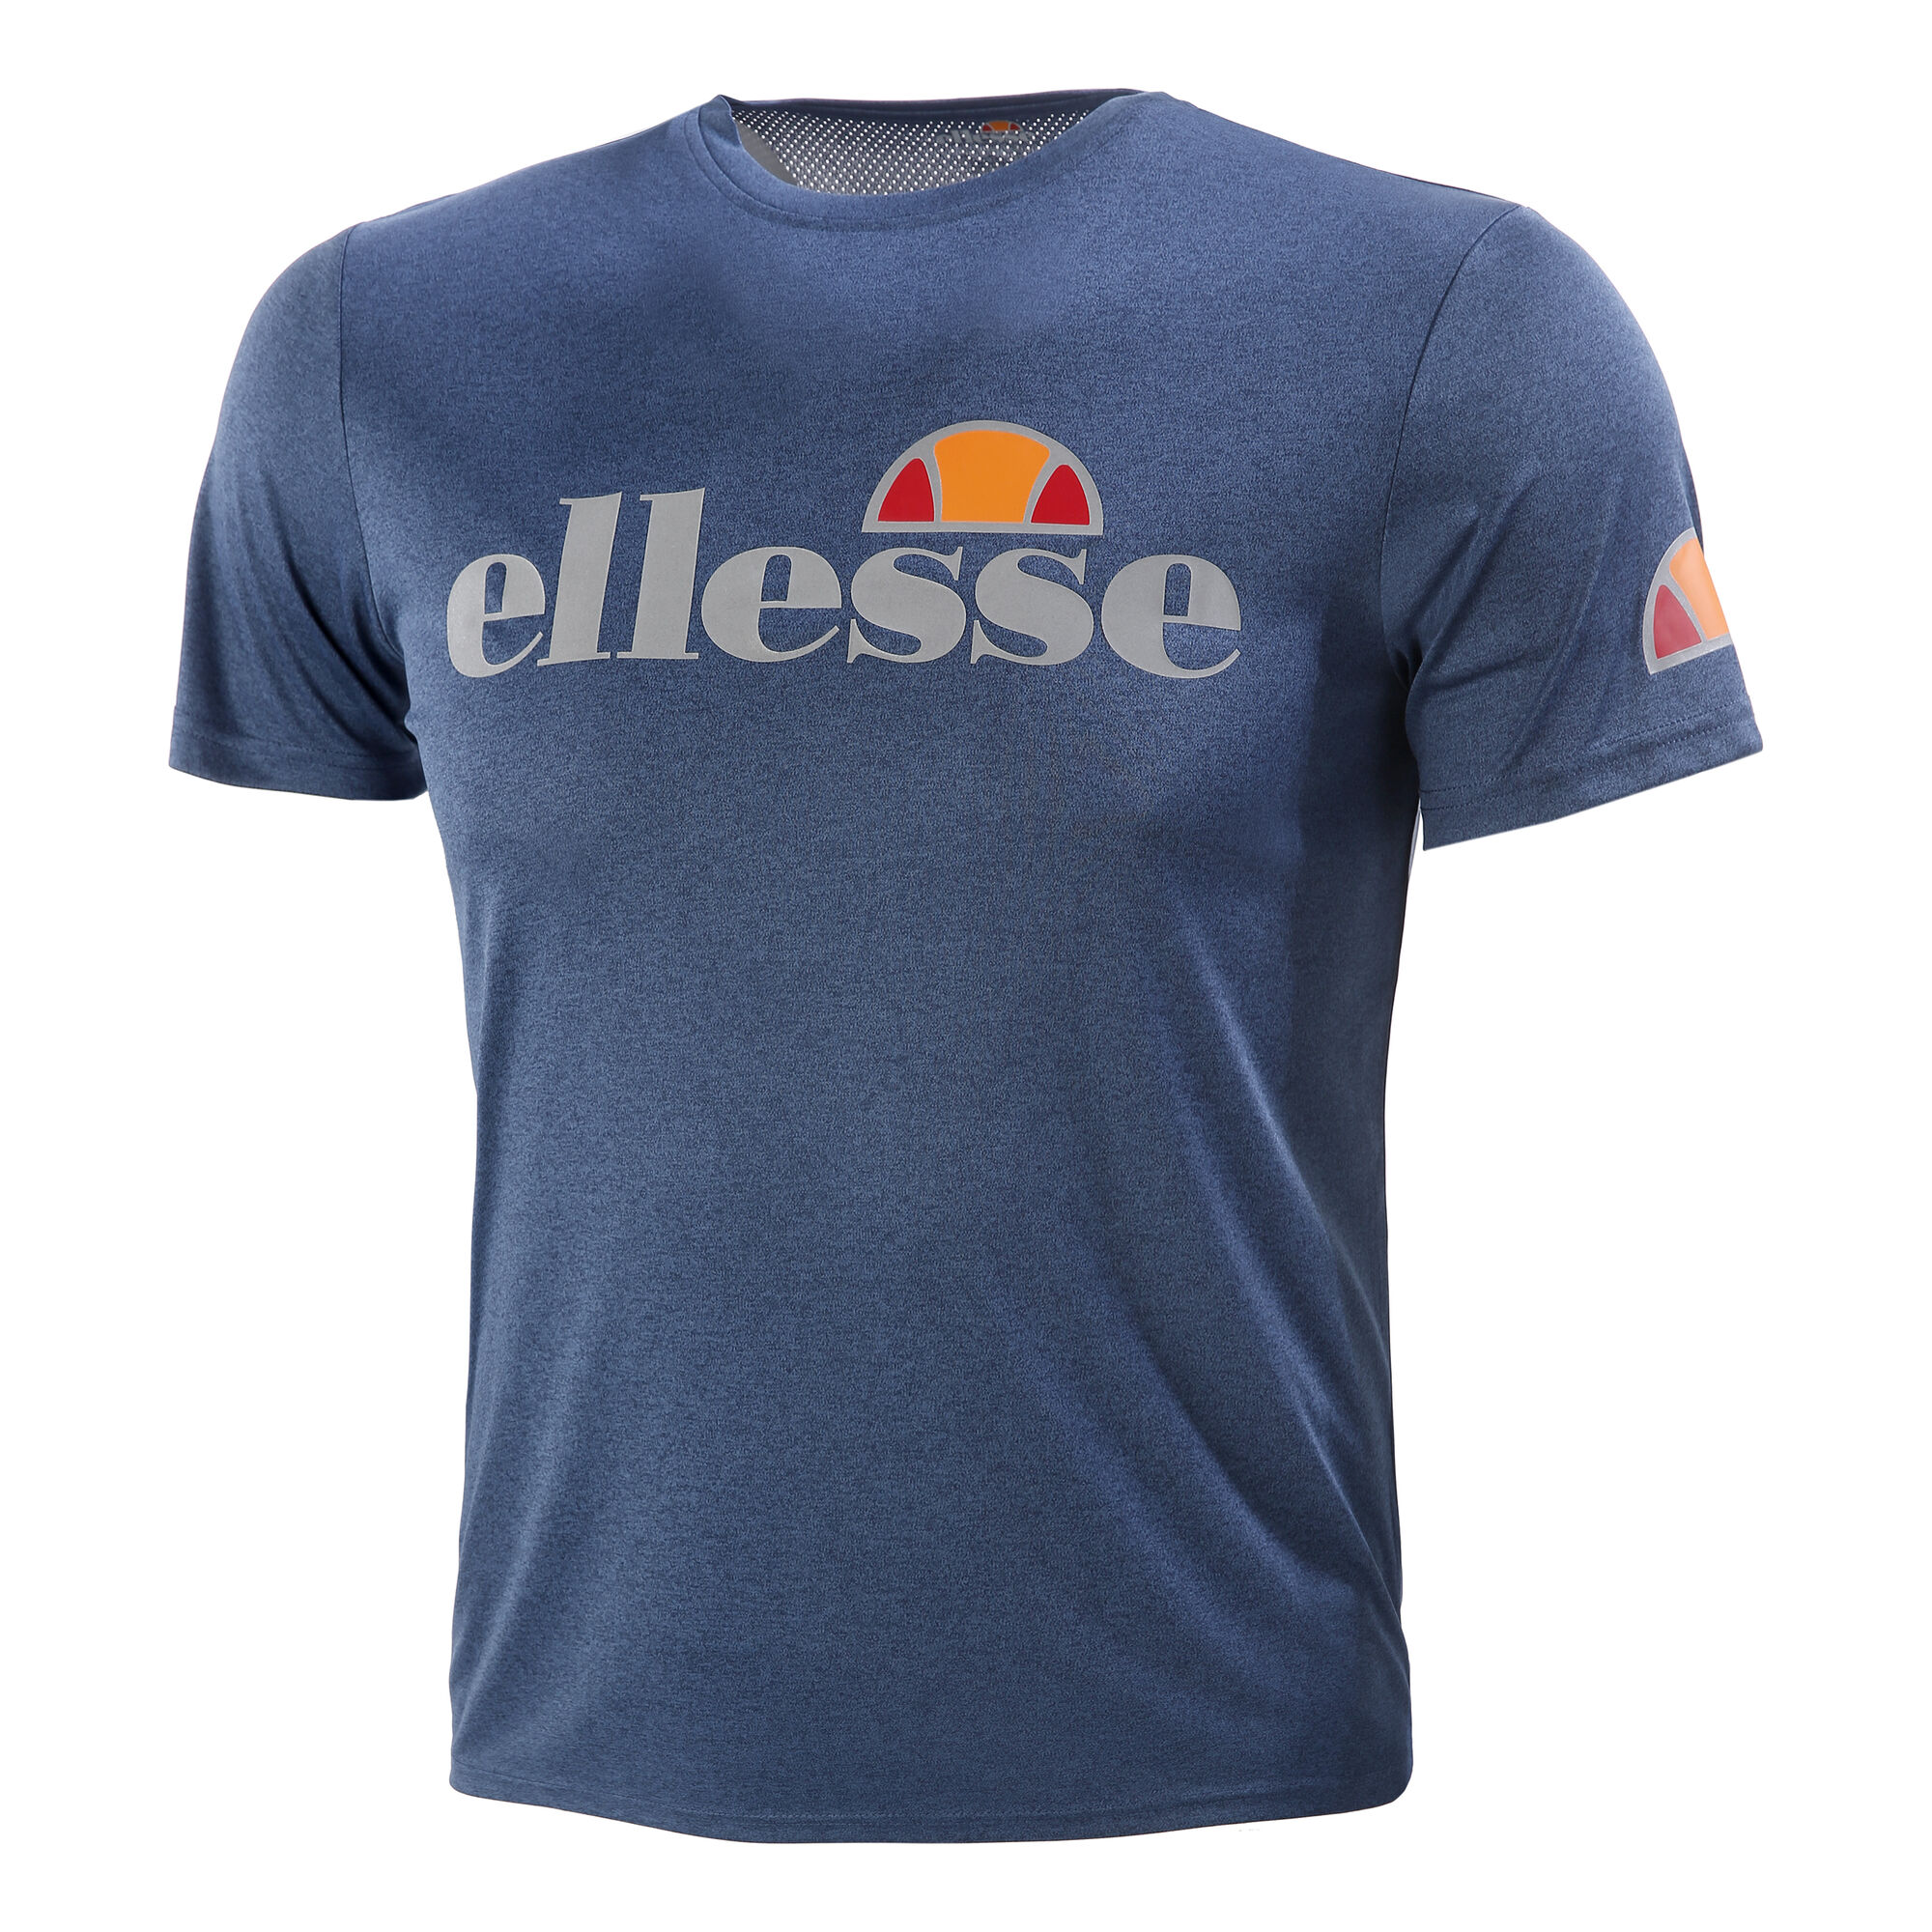 buy Ellesse Pozzio T-Shirt Men - Blue, Silver online | Tennis-Point